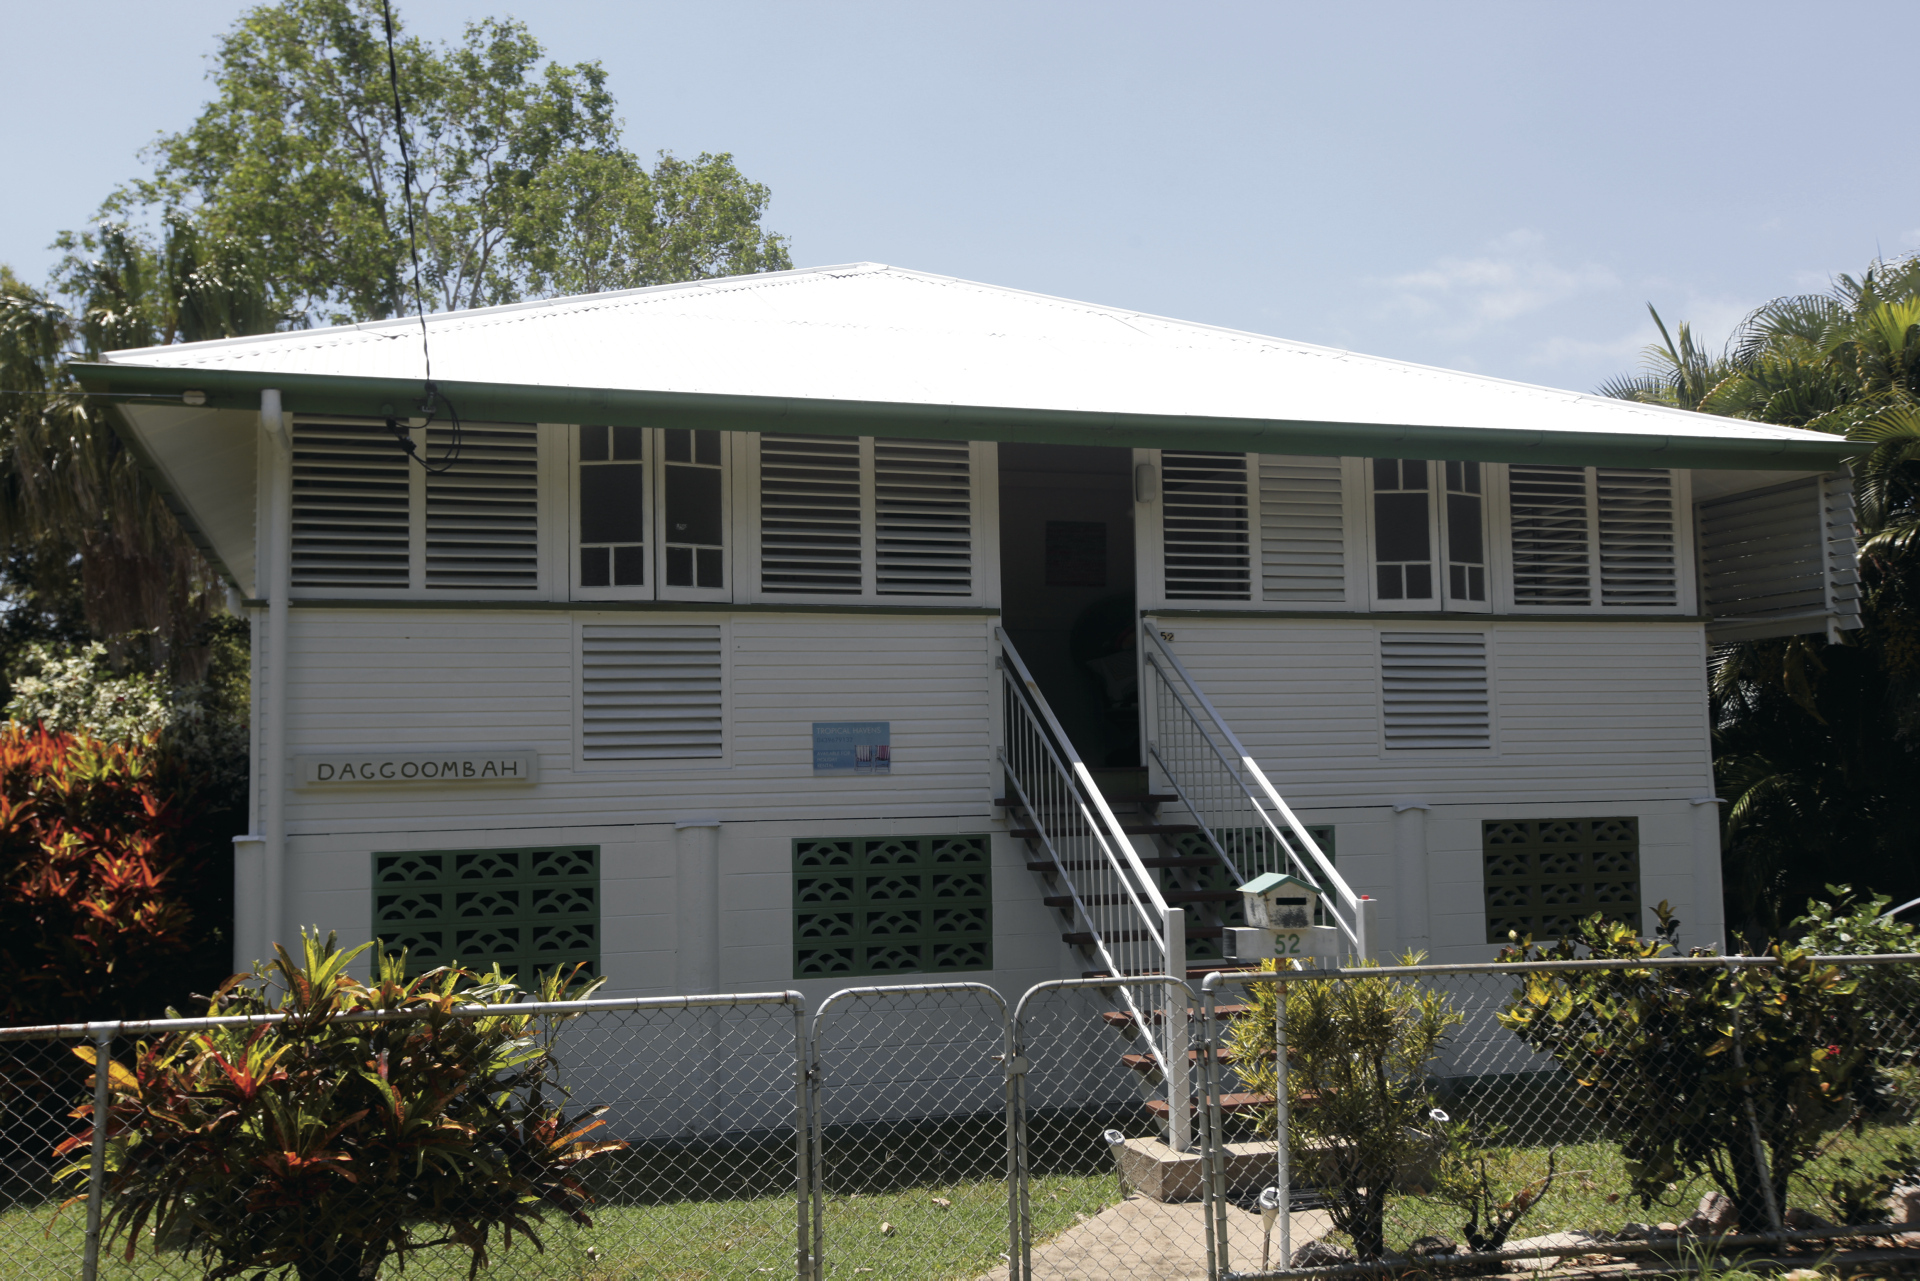 Daggoombah - typisches Queenslander Haus